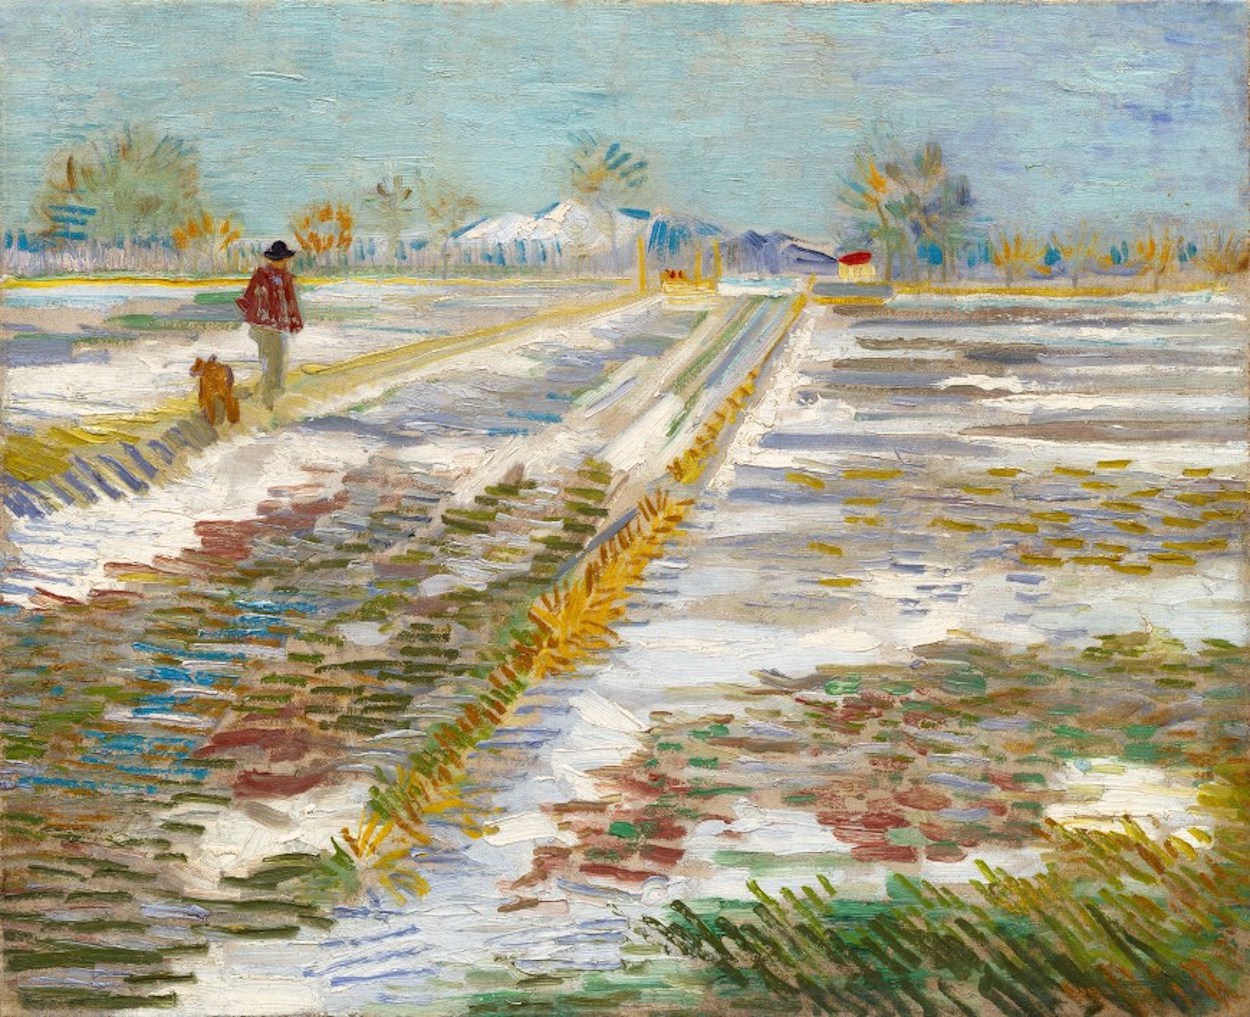  Снежный пейзаж by Винсе́нт Виллем Ван Гог - 1888 - 38 x 46 см 